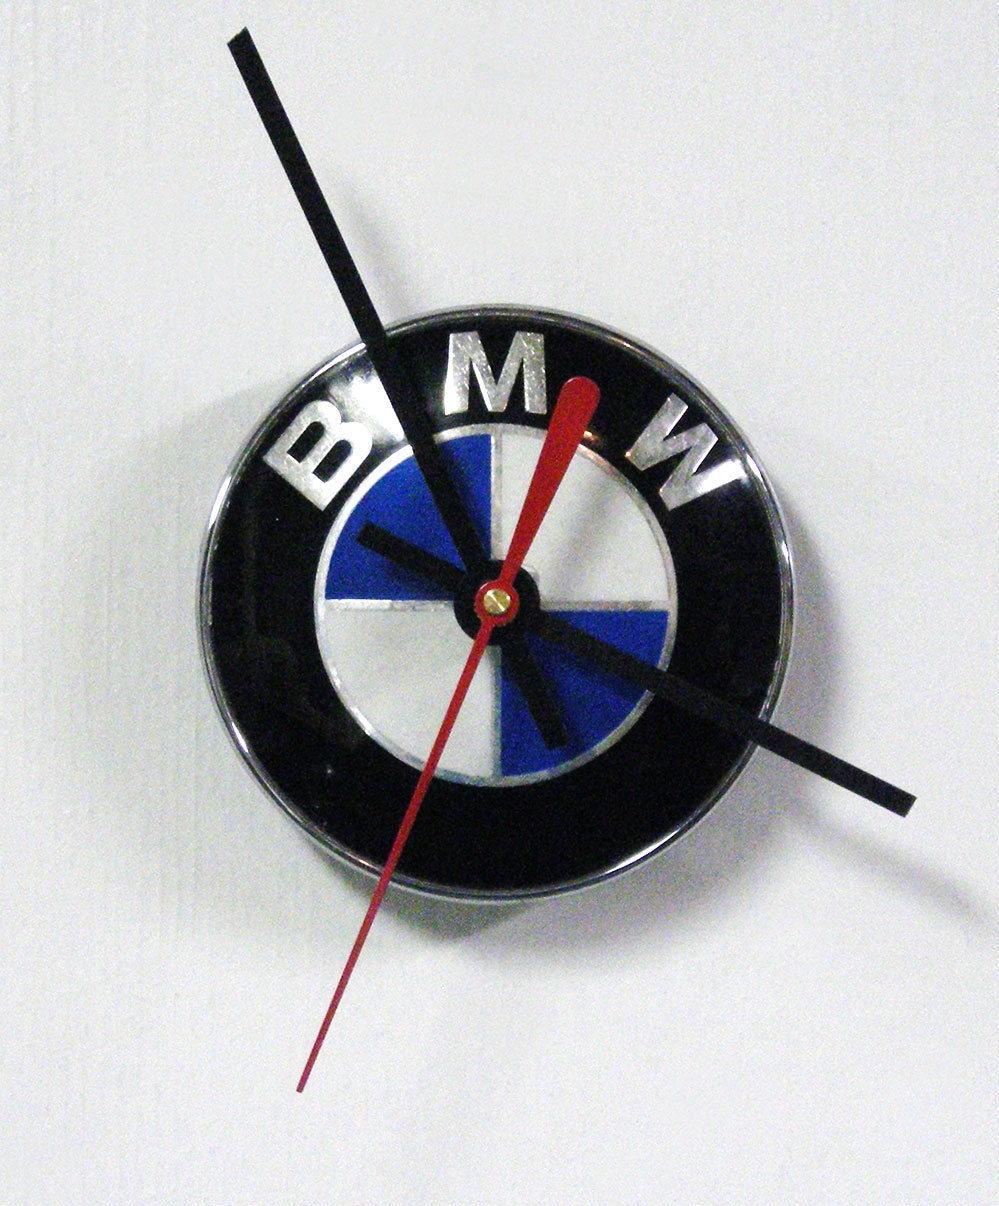 Bmw mini clock wall